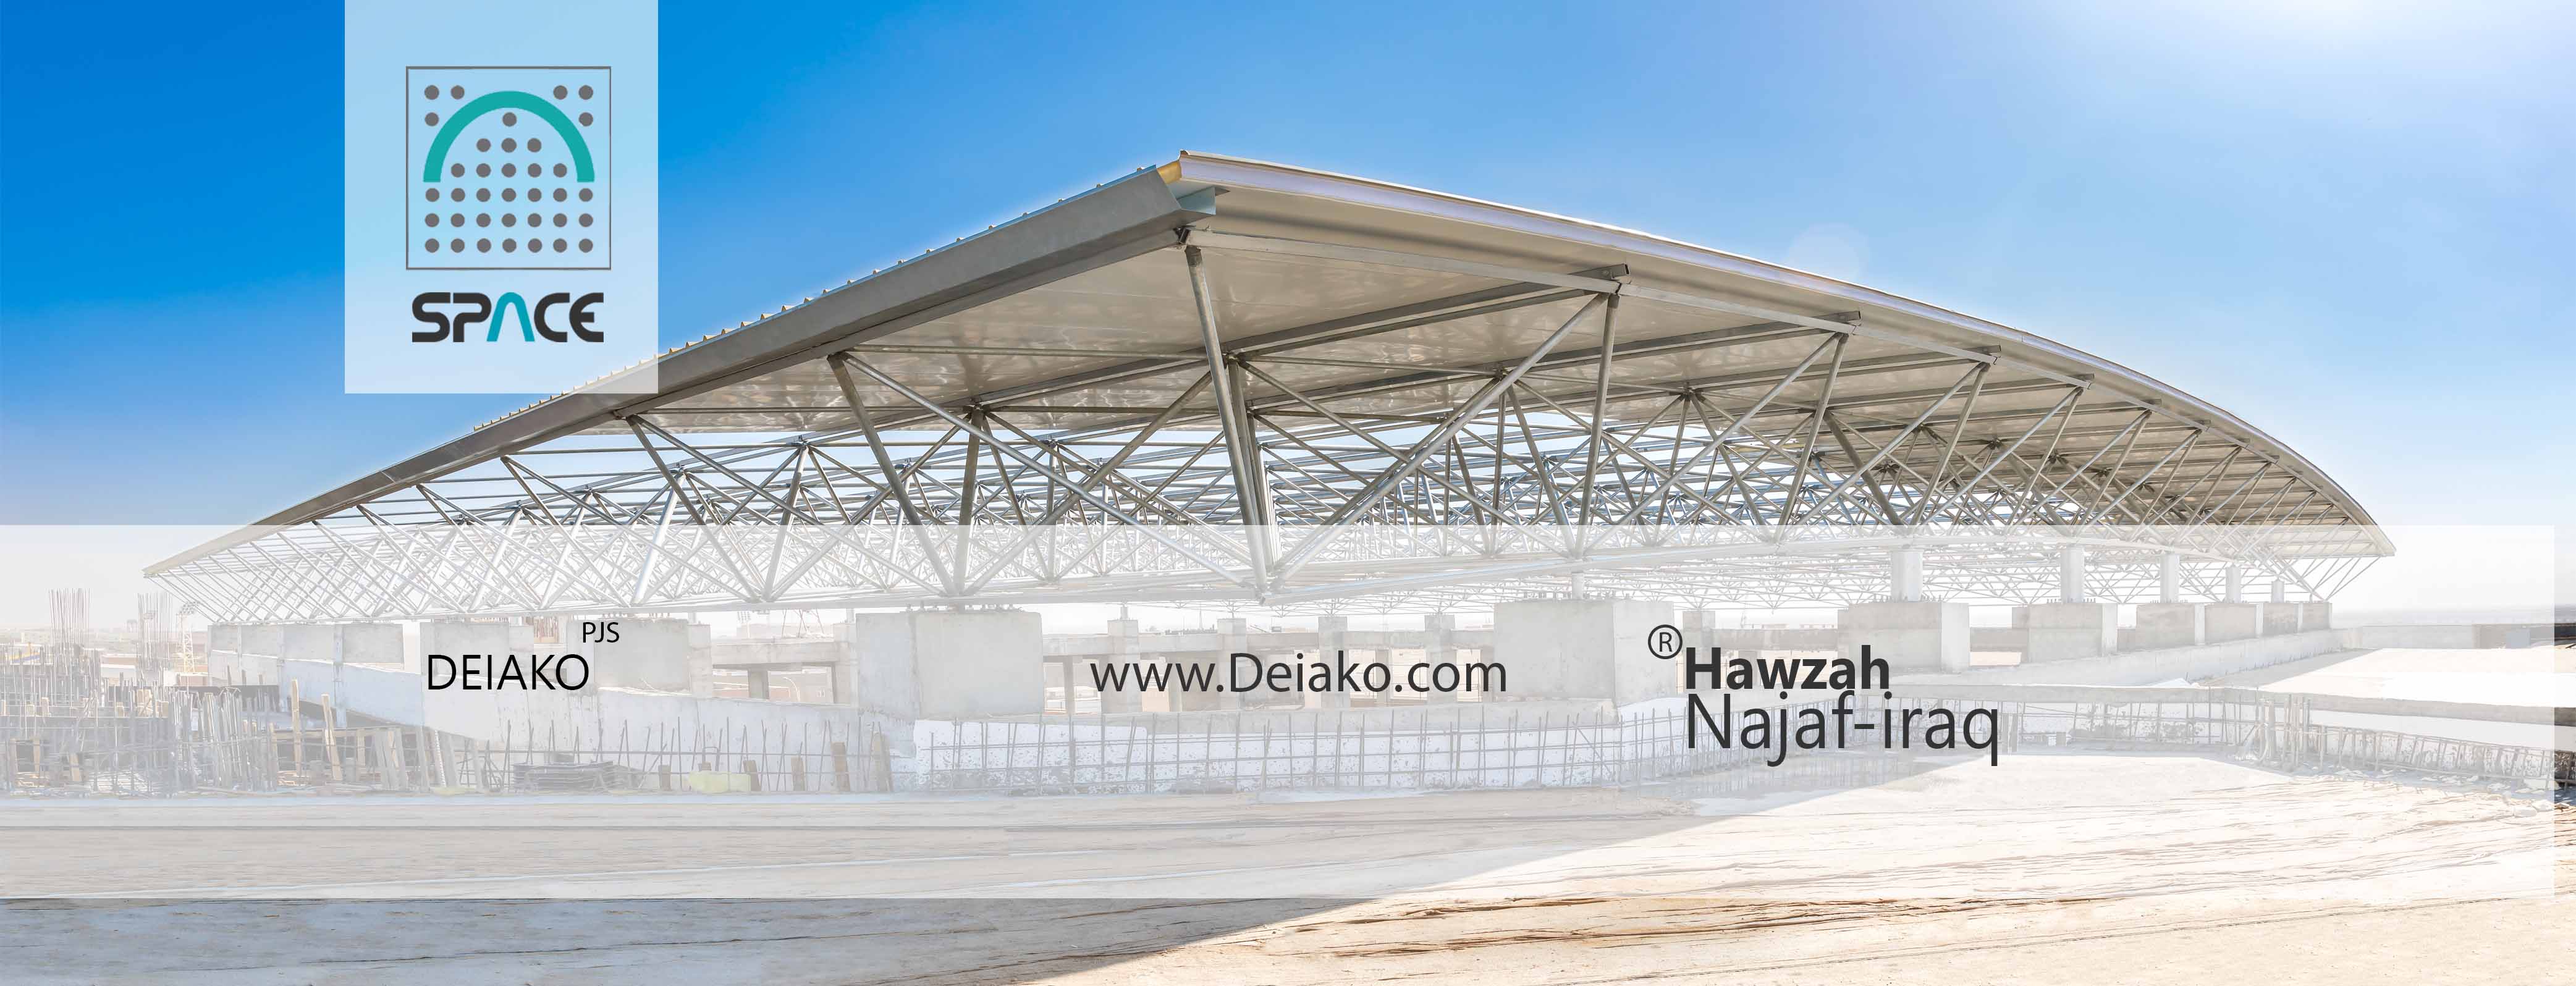 نصب زیرسازه سازه فضایی برای ساندویچ پانل سقفی در شهر نجف عراق